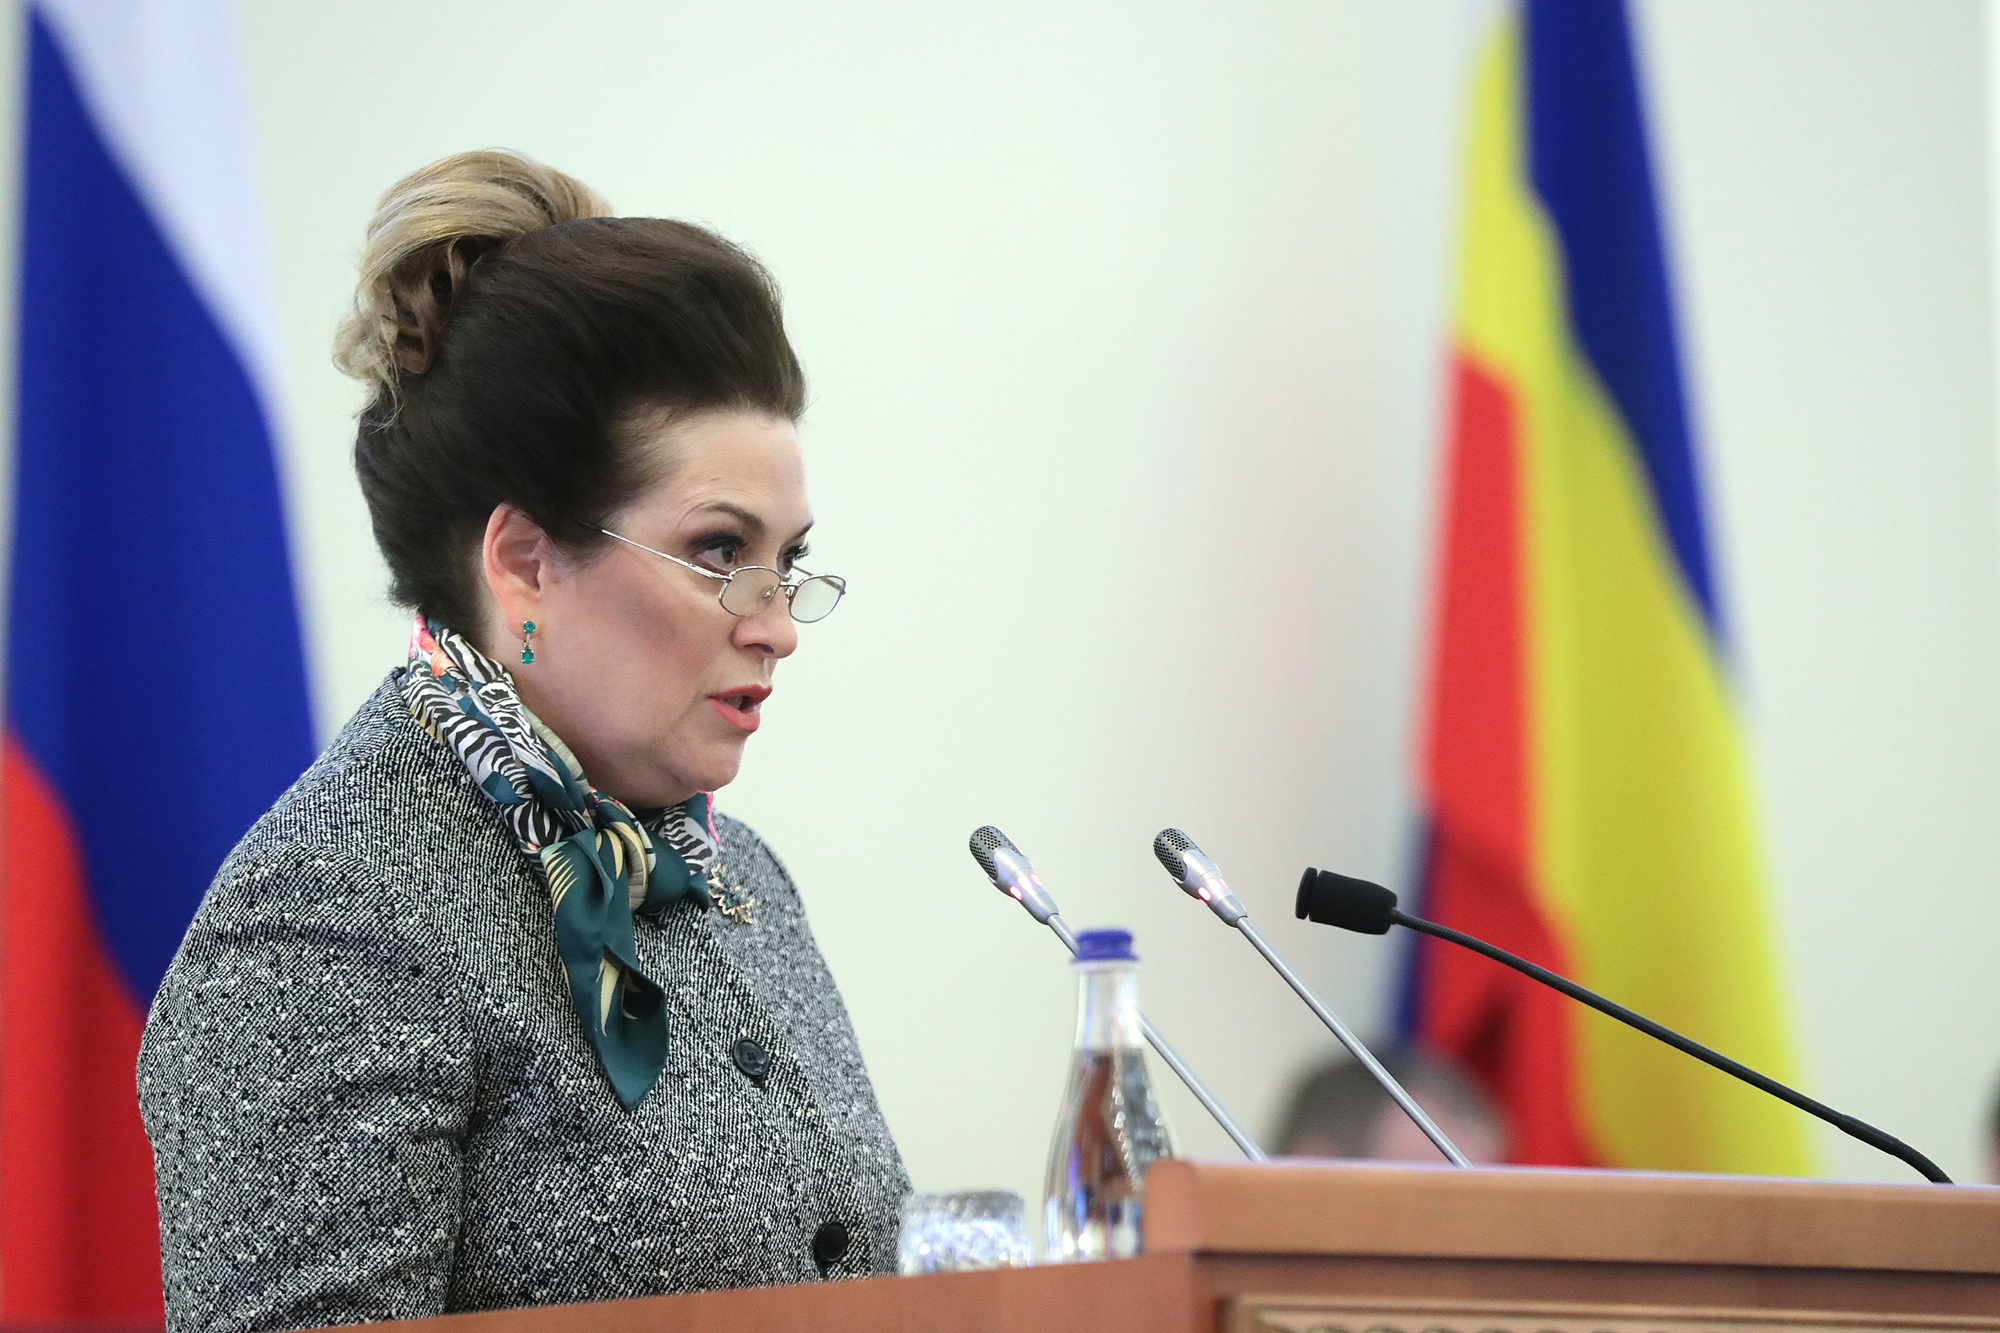 Министр здравоохранения Ростовской области Татьяна Быковская задержана по подозрению в превышении должностных полномочий